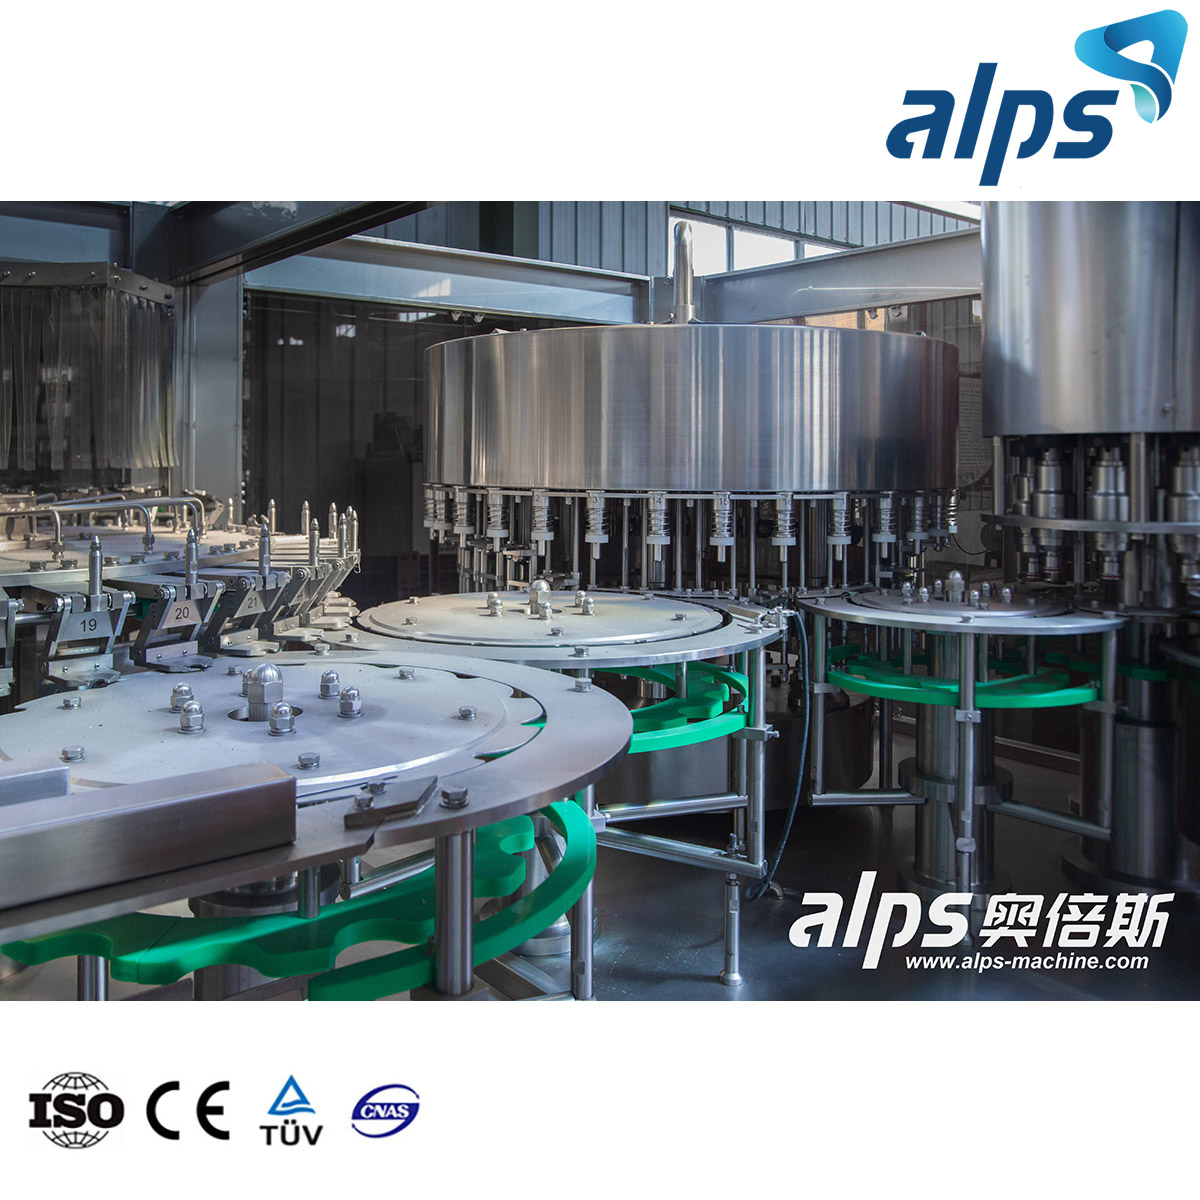 Fabricante de máquinas de llenado de botellas Alps Máquina de llenado de agua 3 en 1 Máquina de llenado de cubos de yogur de 12 cabezales